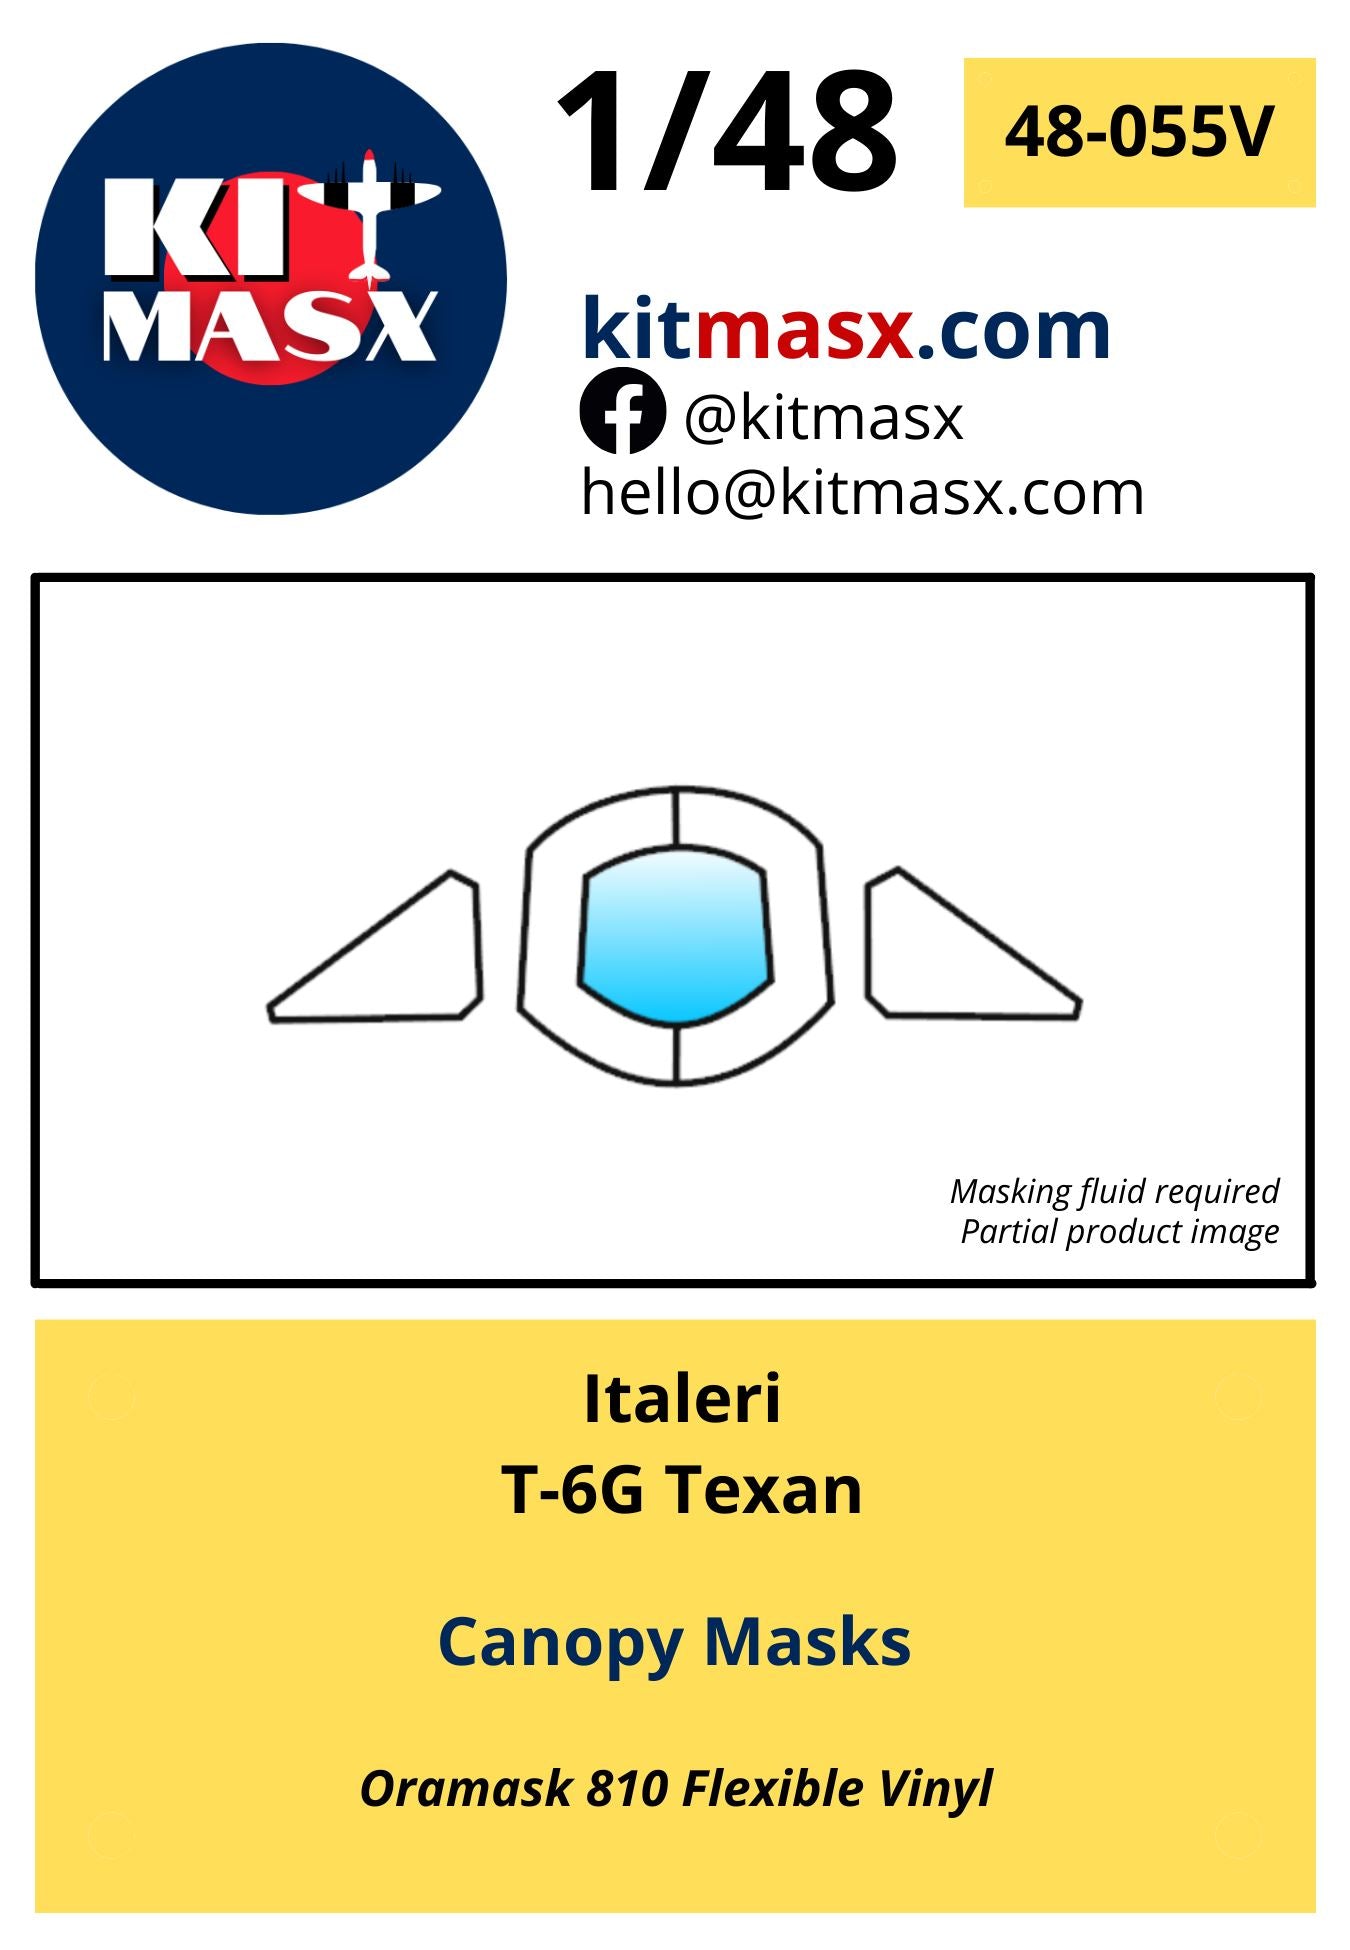 Italeri T-6G Texan Canopy Masks Kit Masx 